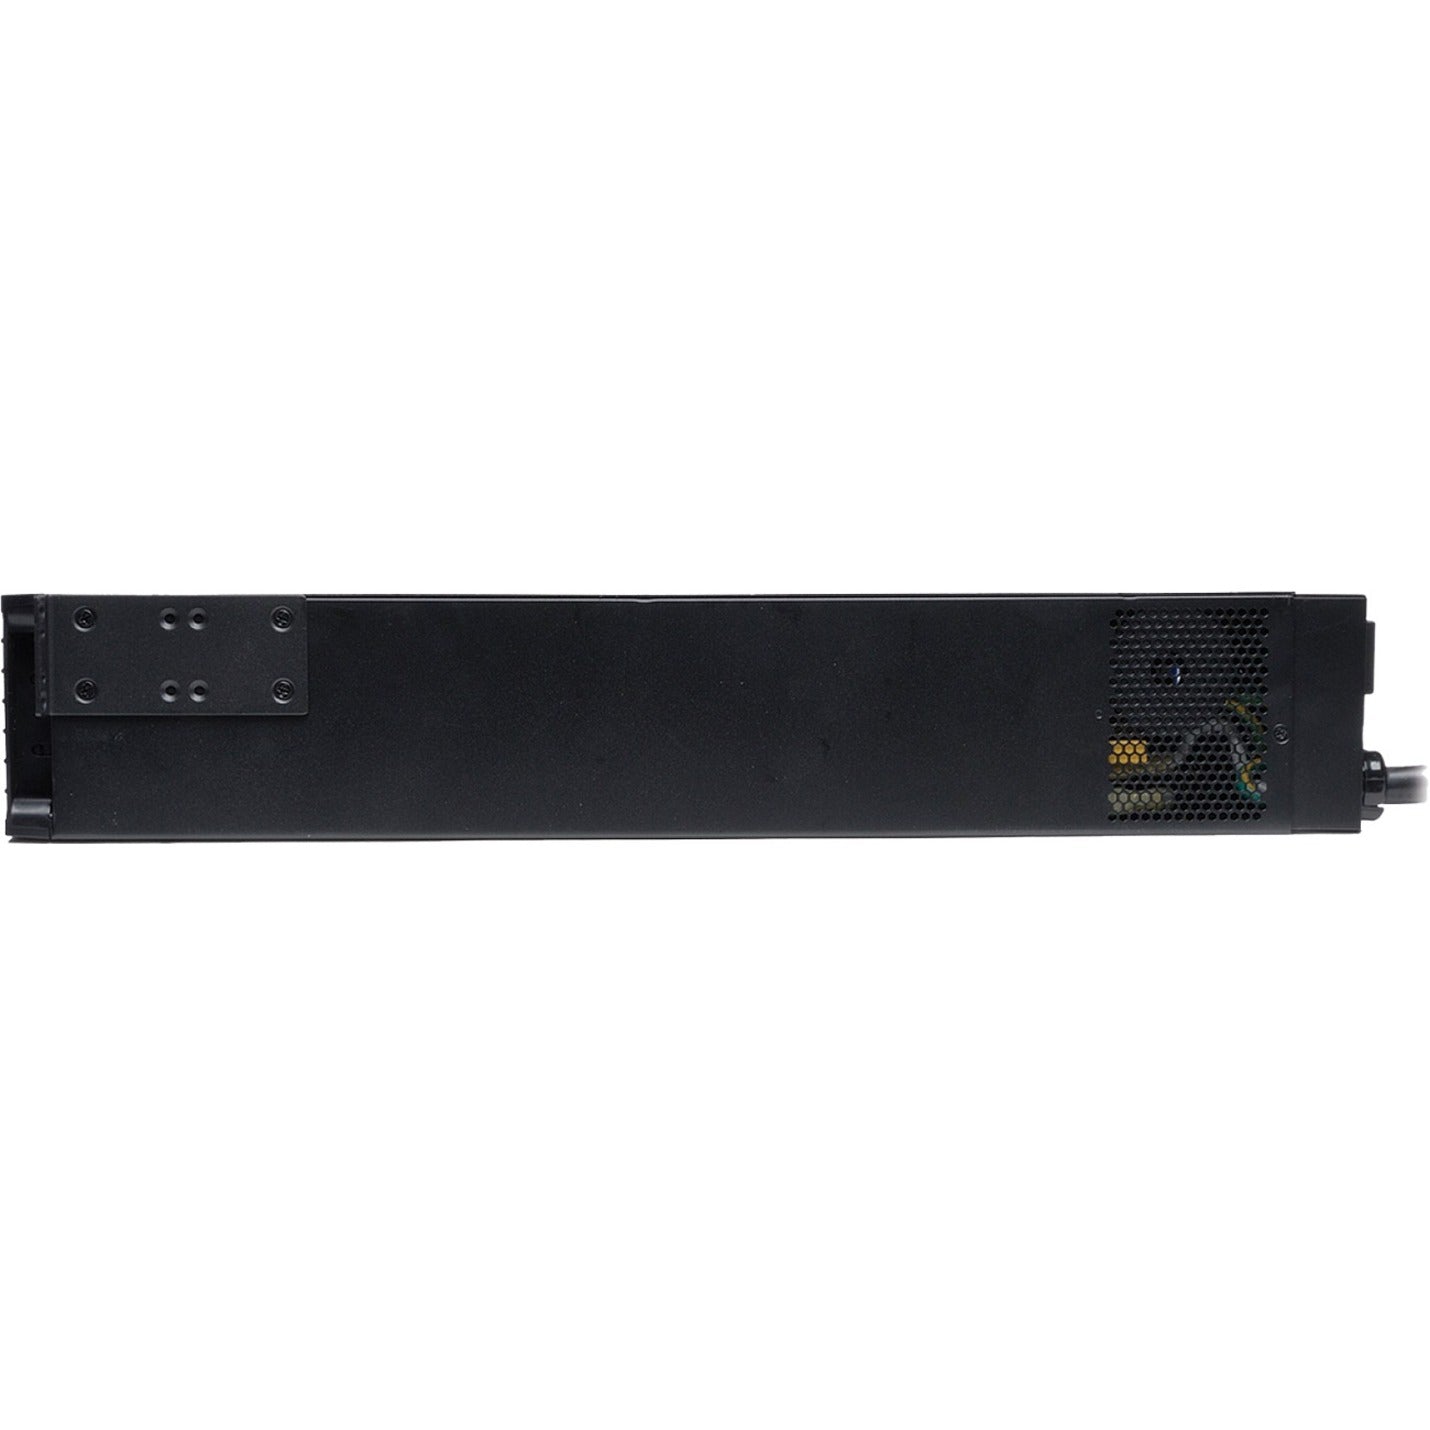 Tripp Lite SMART1500RM2UL SmartPro Rack-mountable UPS, 1500VA/1440W, Pure Sine Wave, 5 Year Warranty